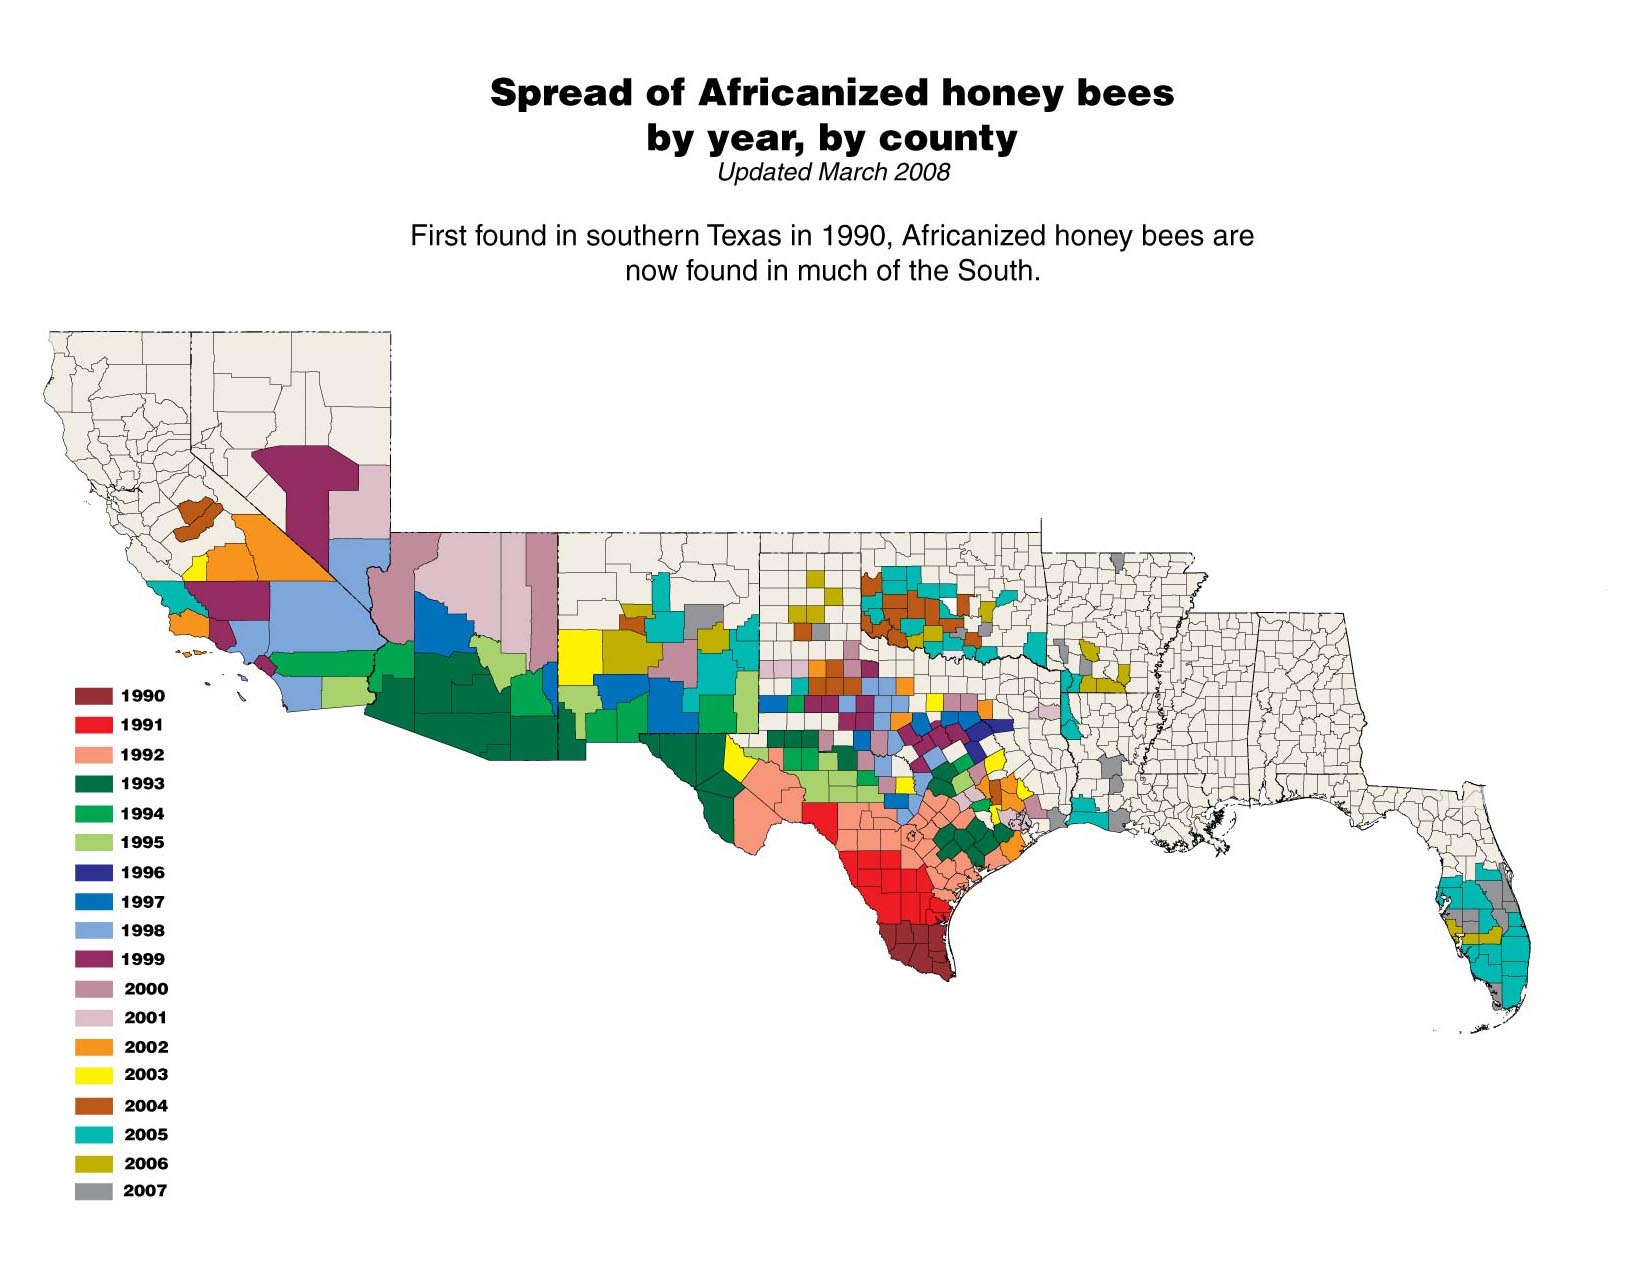 Where do killer bees live?